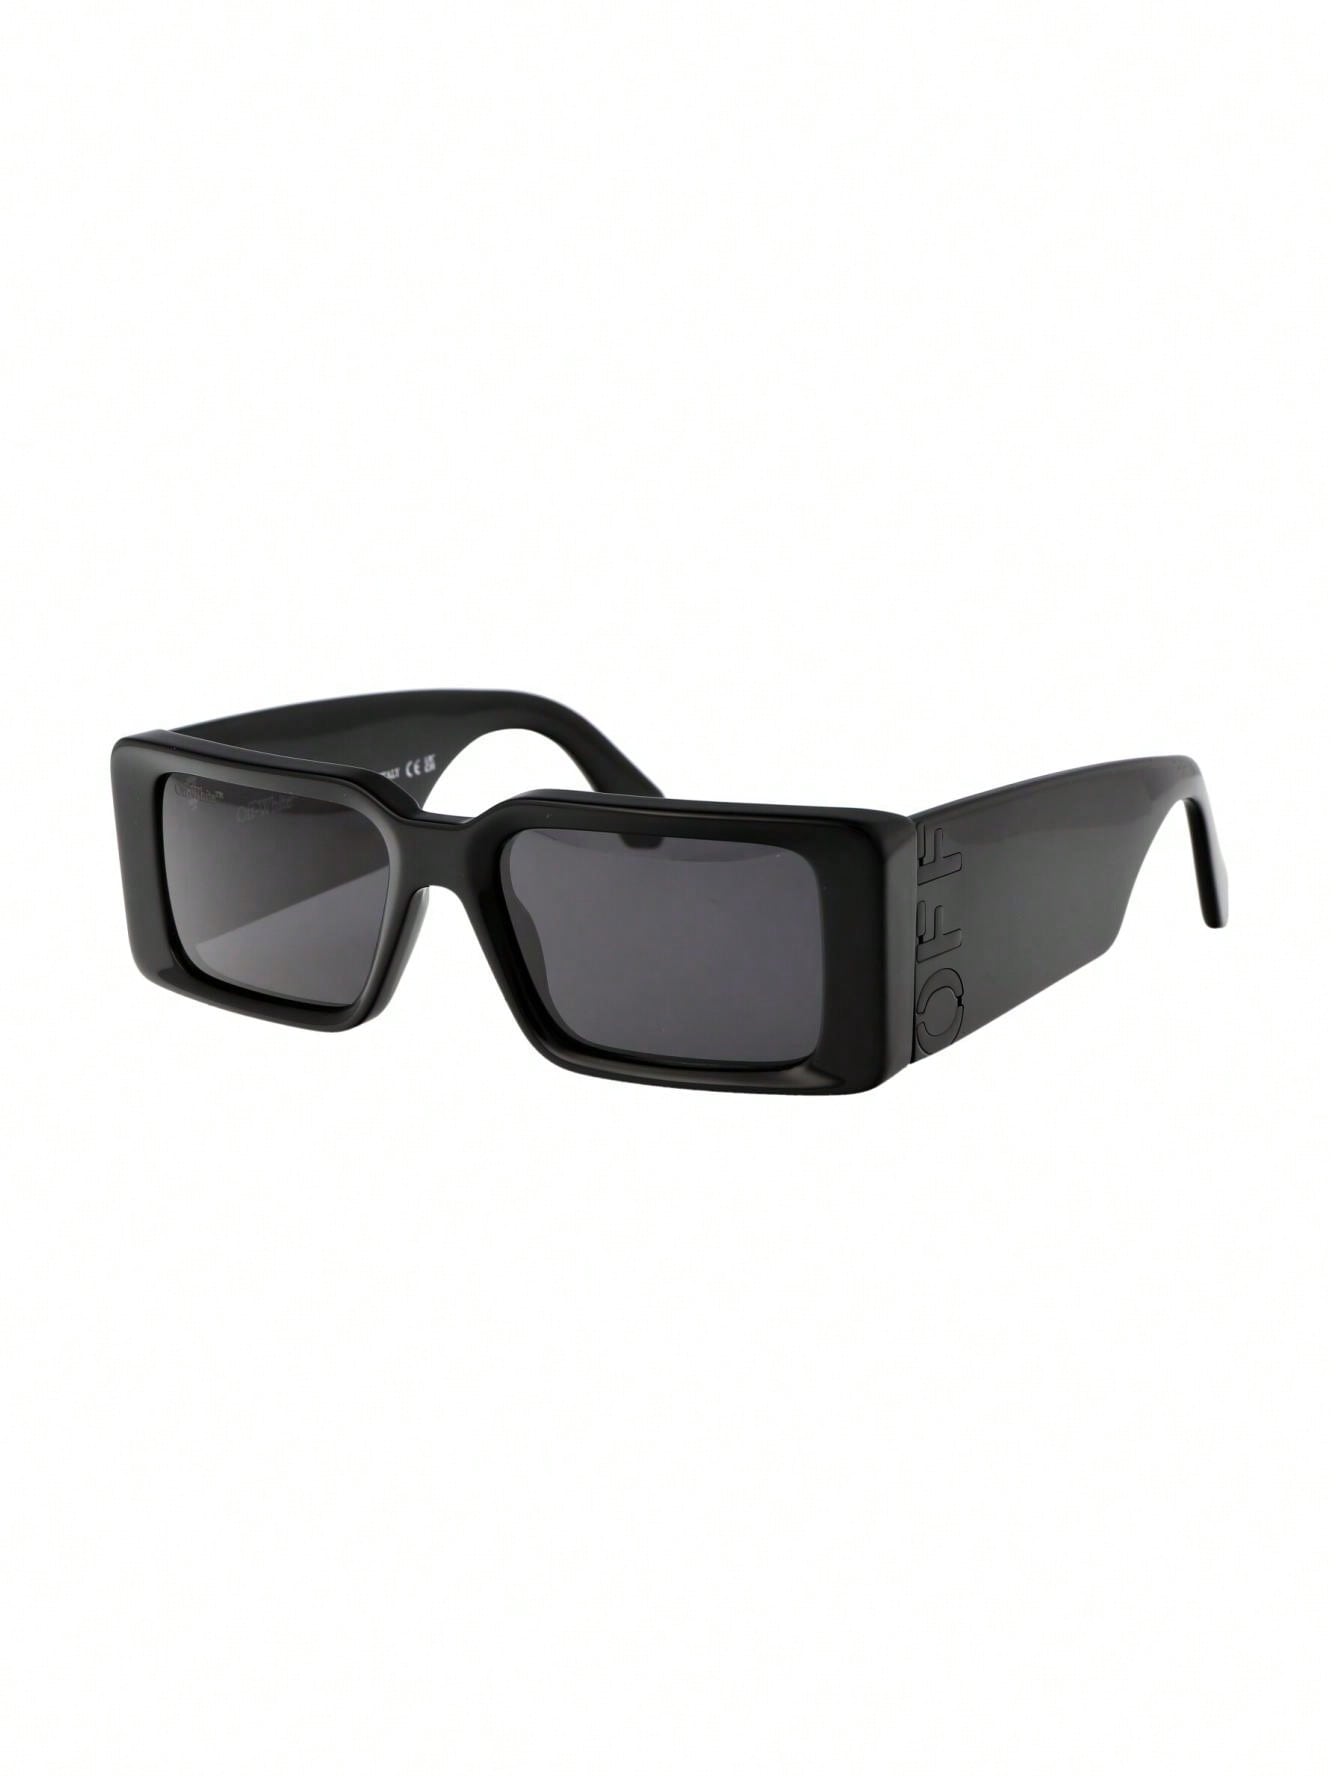 женские солнцезащитные очки off white черные oeri003c99pla0011007 черный Мужские солнцезащитные очки Off-White СЕРЫЕ OERI097F23PLA0011007, серый